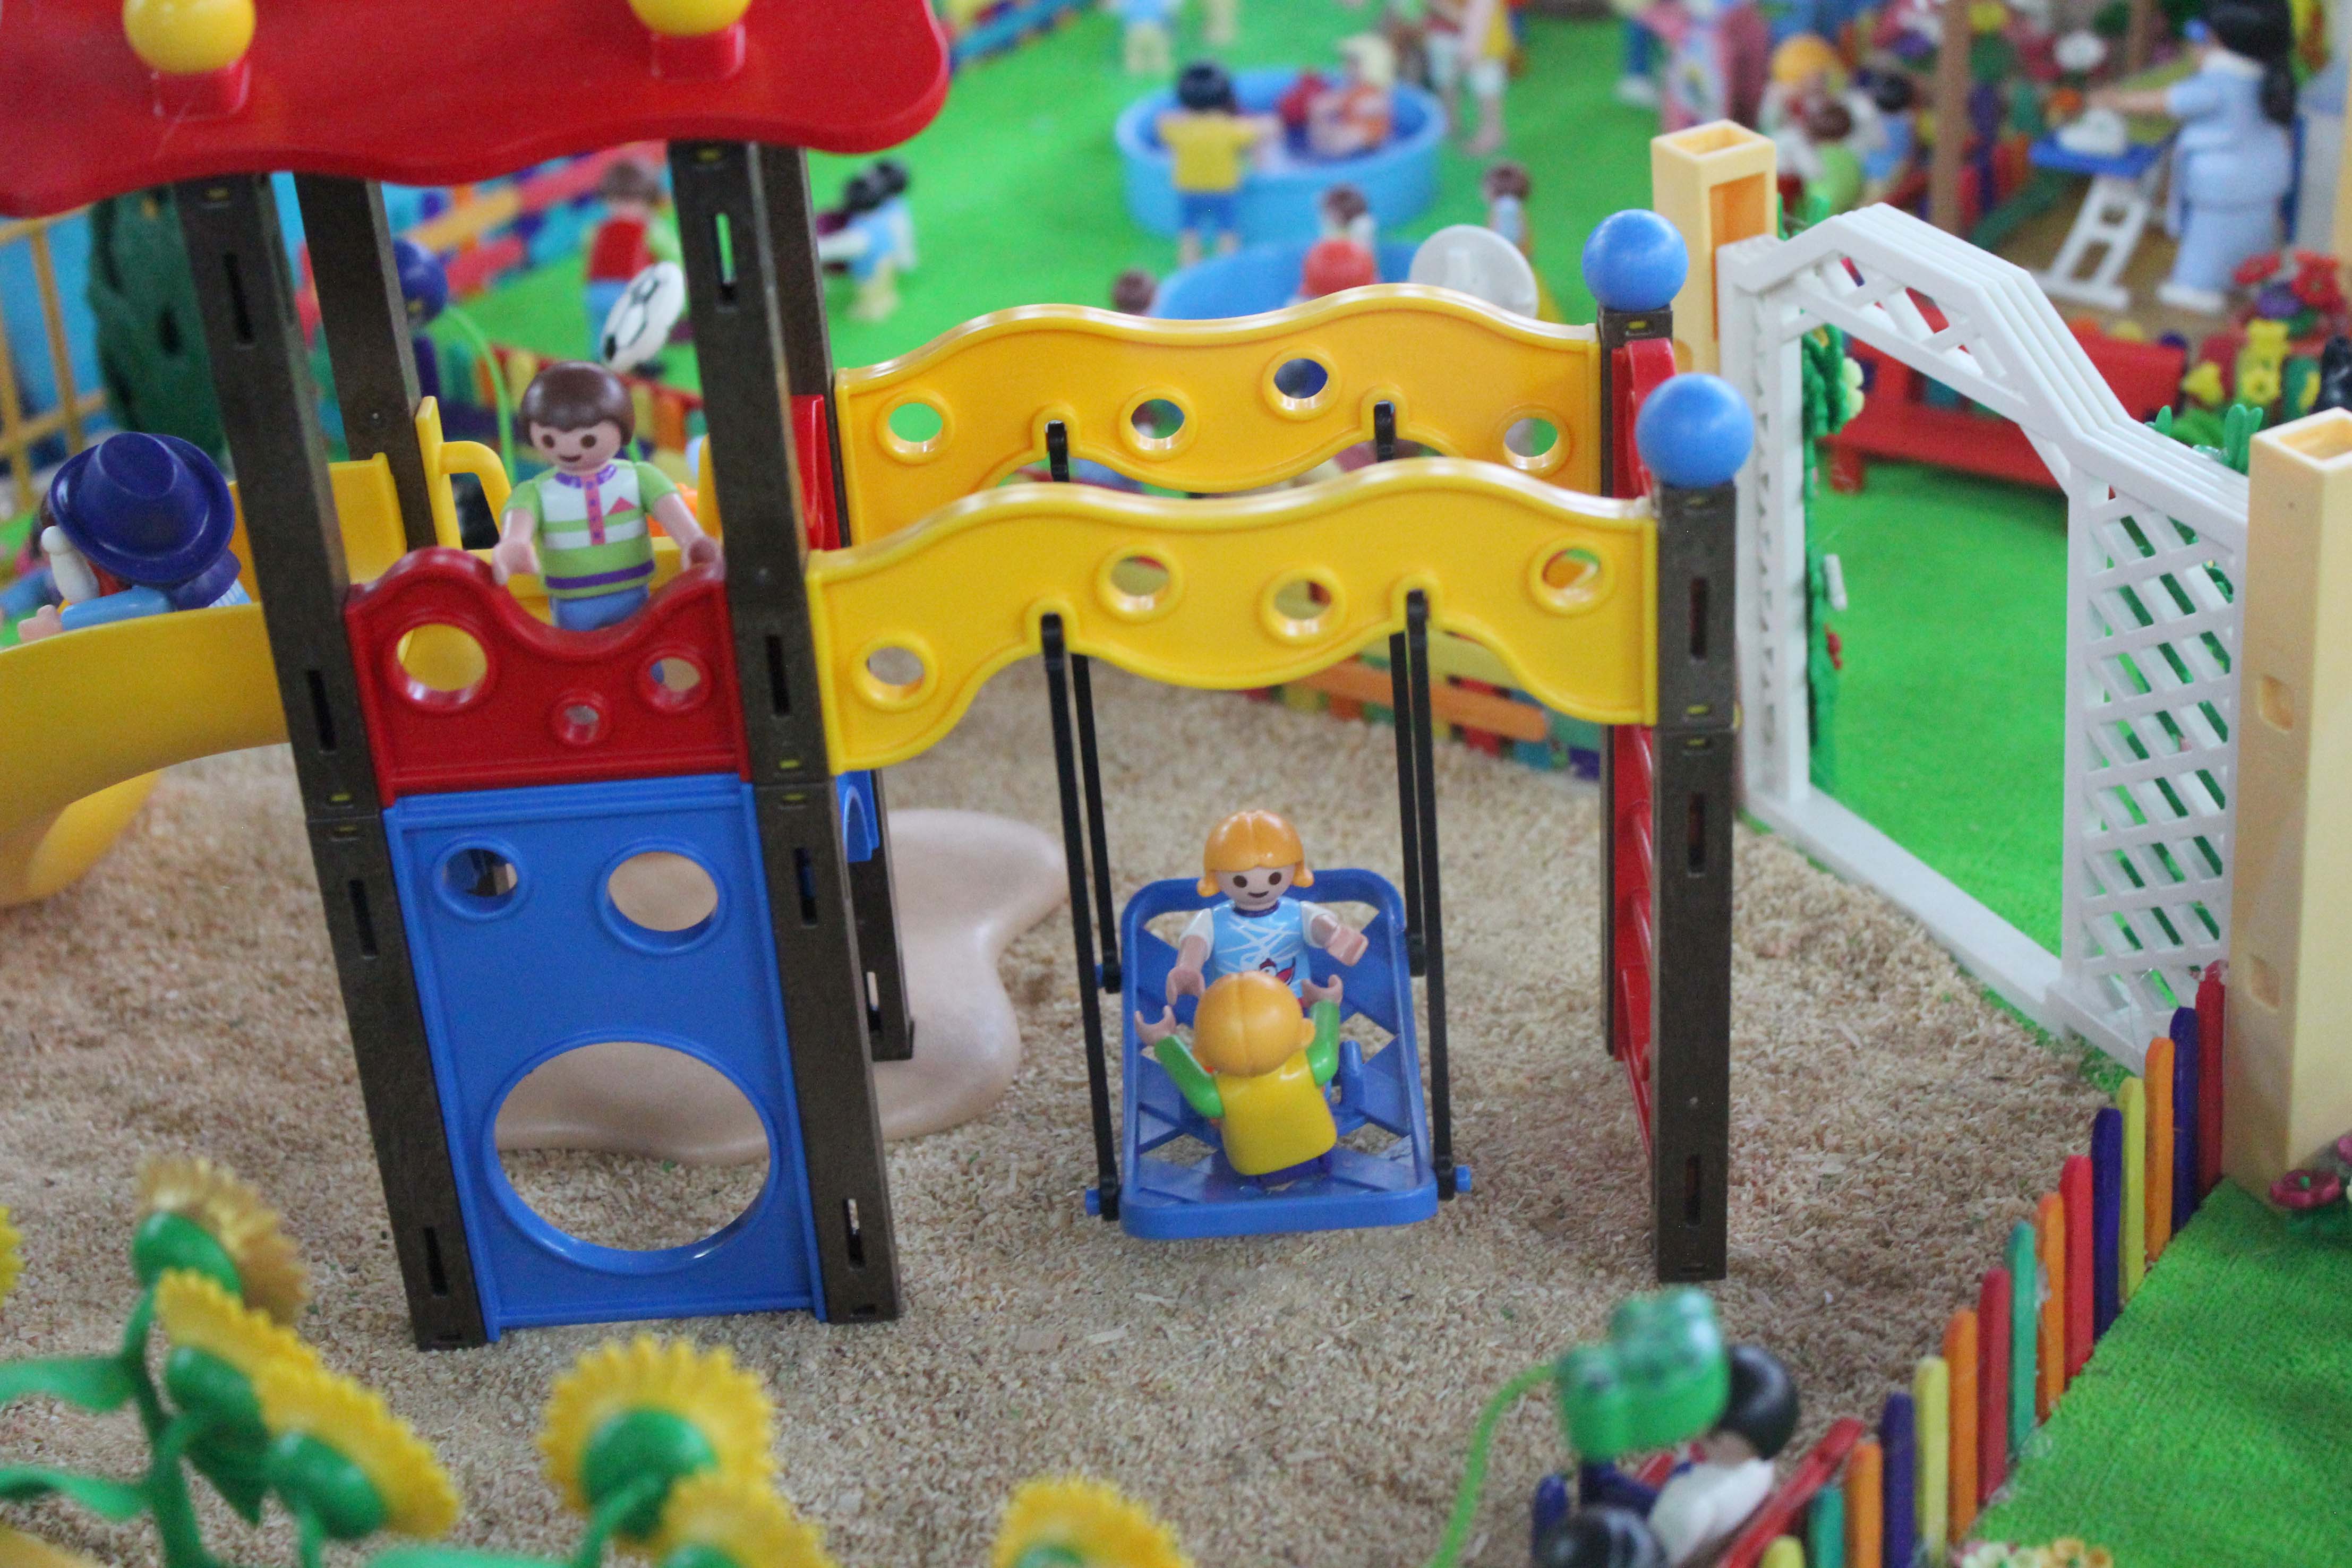 Maqueta de palymobil de niños y niñas en un parque de juegos.